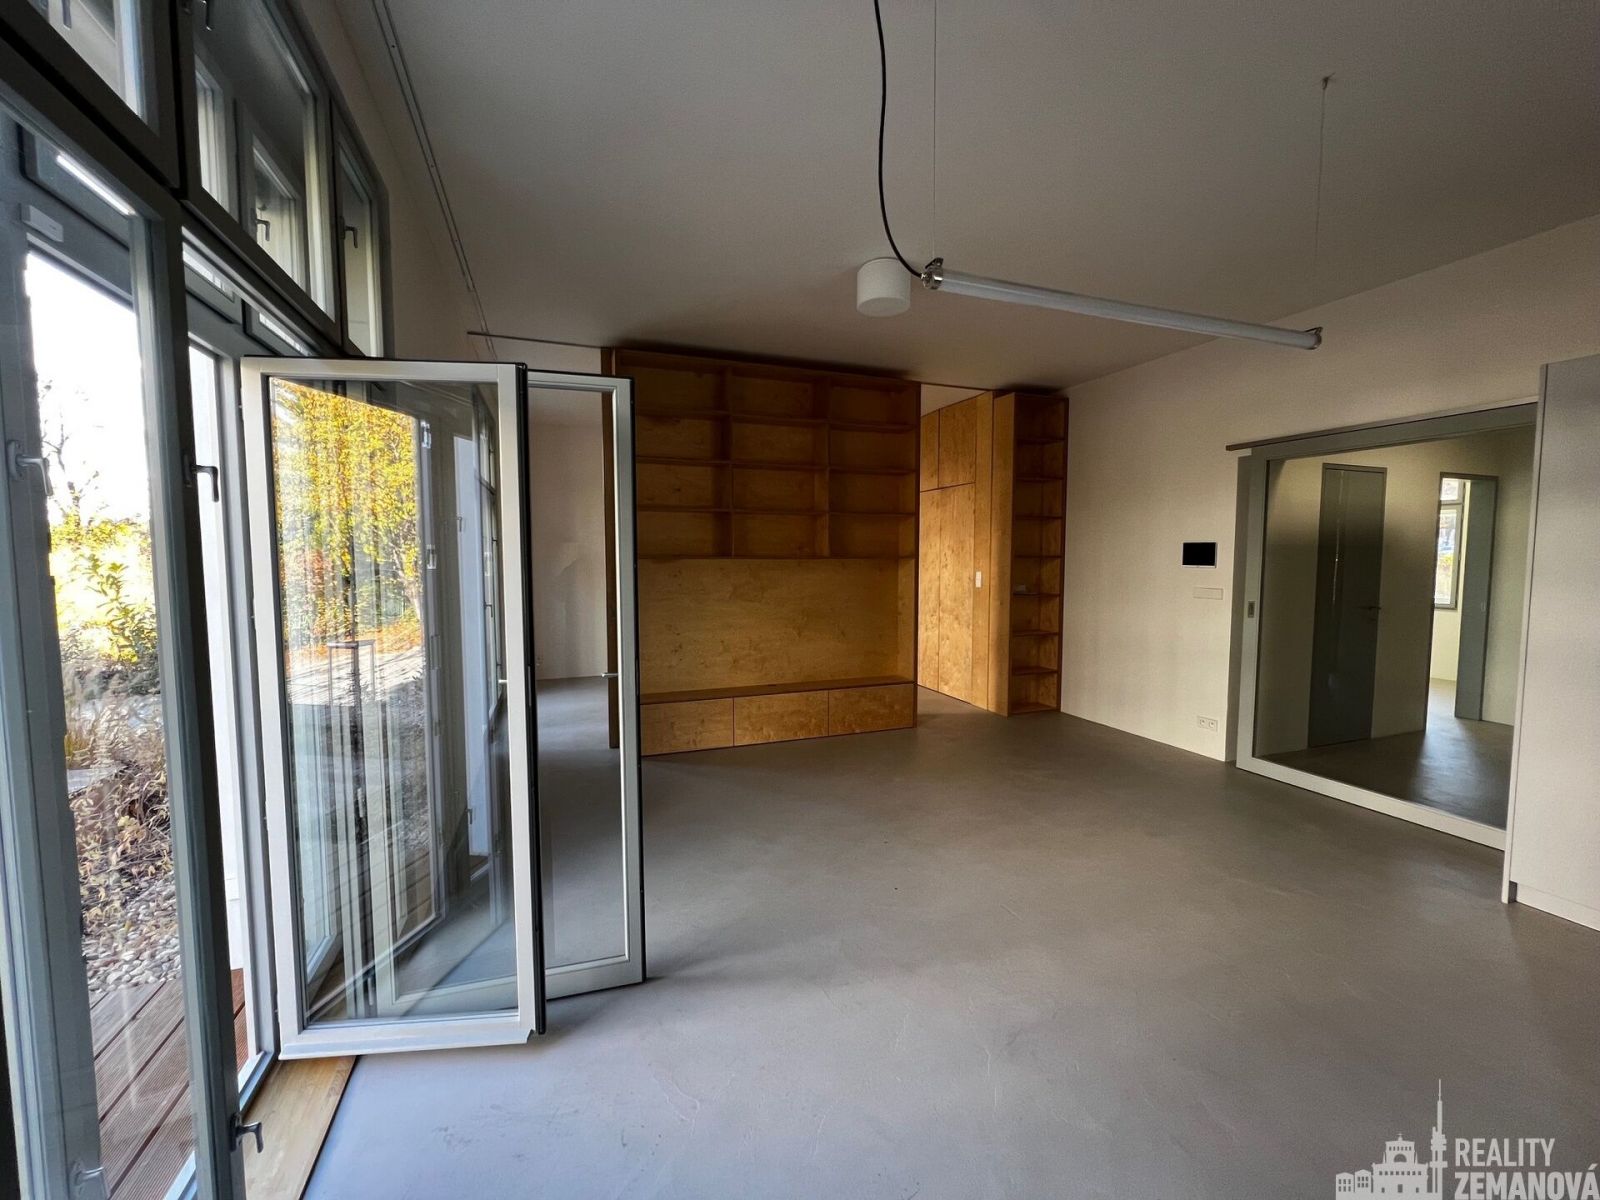 Nový byt 3+kk, 166,9 m2 včetně terasy, komory, 2.NP, 2 parkovací místa, sklep, Praha 10 - Vinohrady